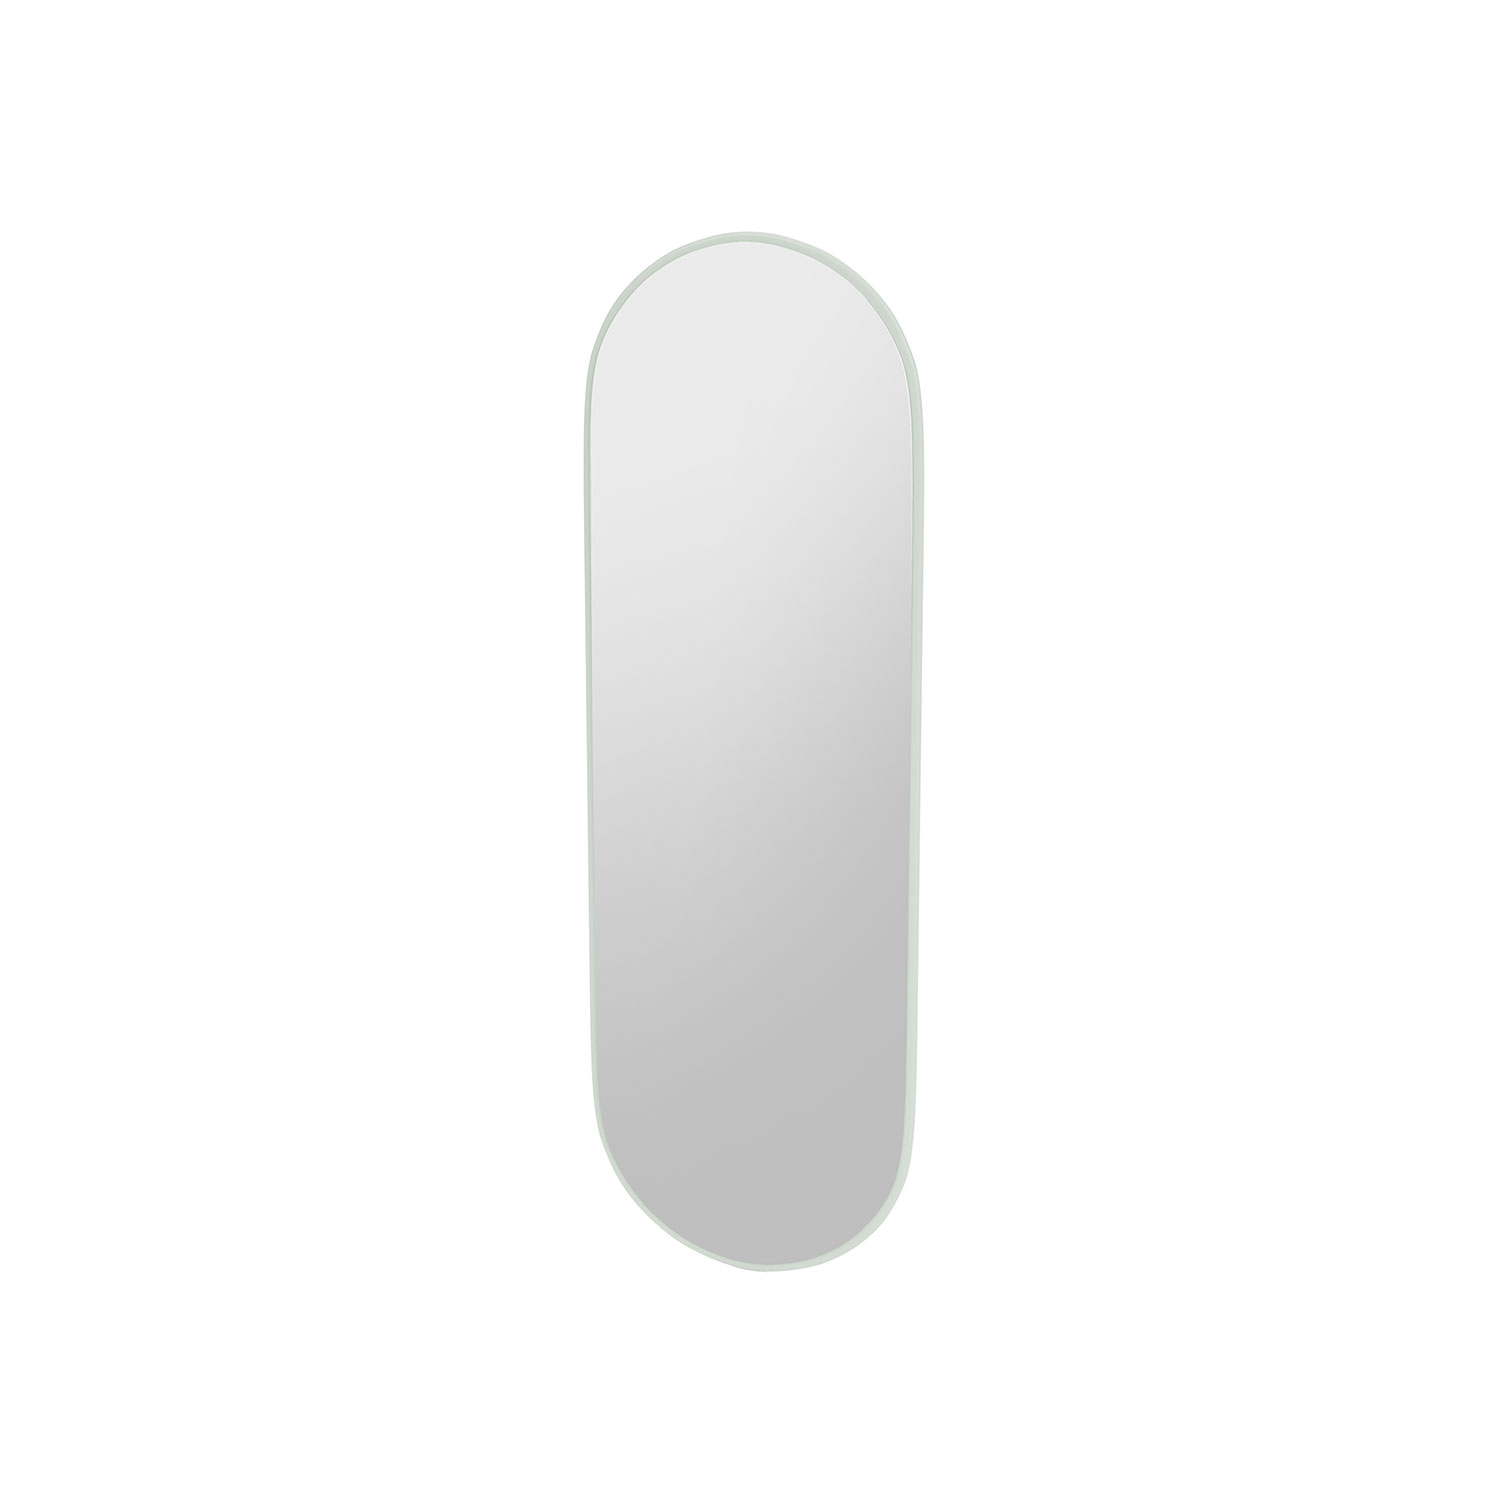 FIGURE oval mirror, Mist